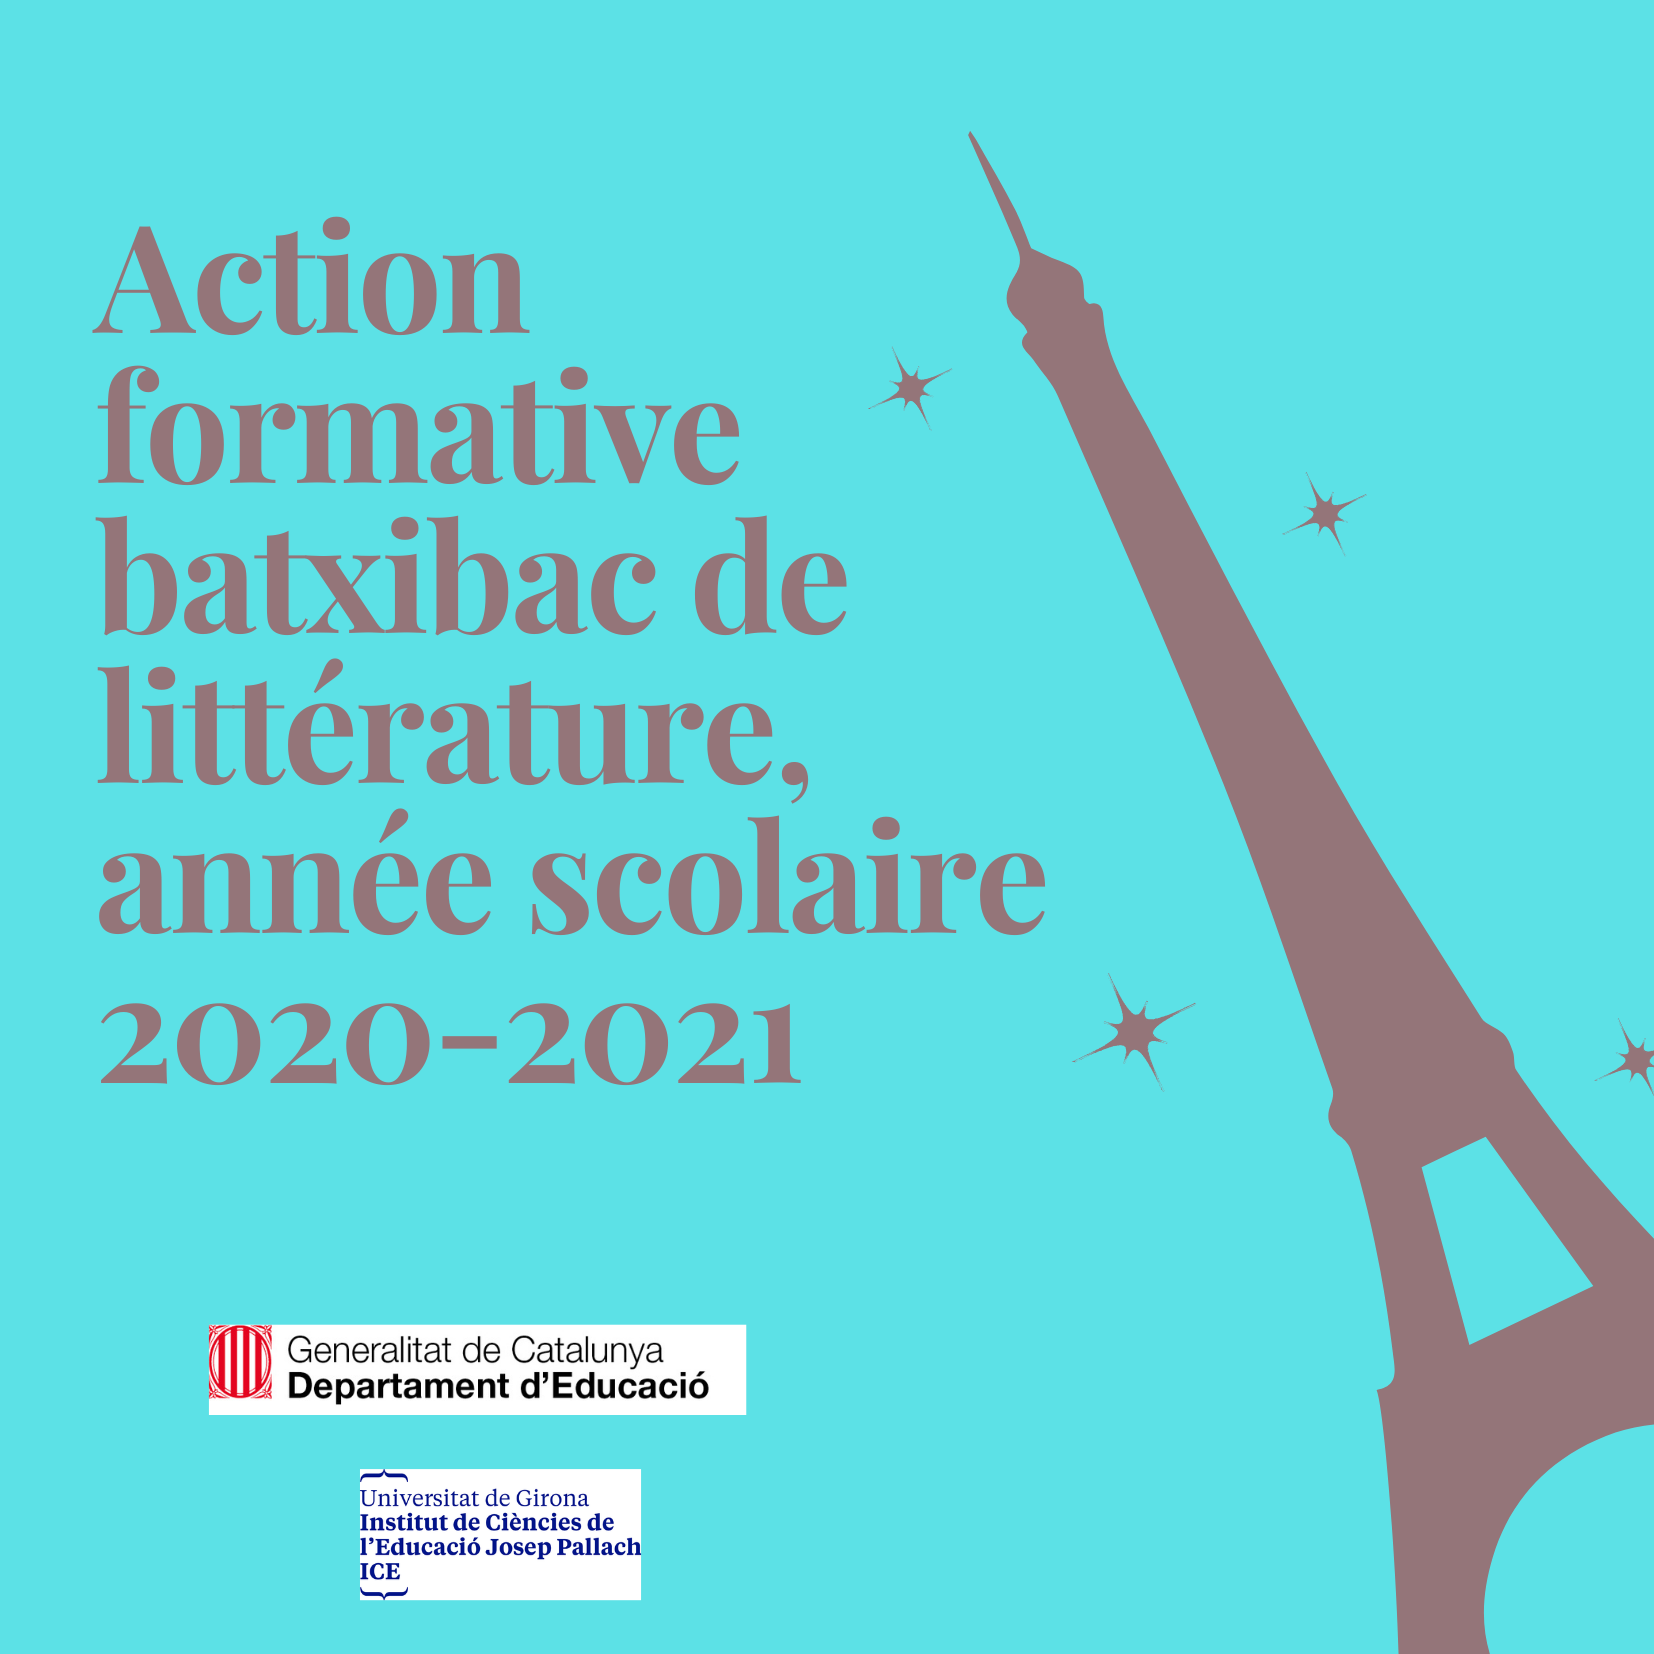 Action formative batxibac de littérature, année scolaire 2020-2021